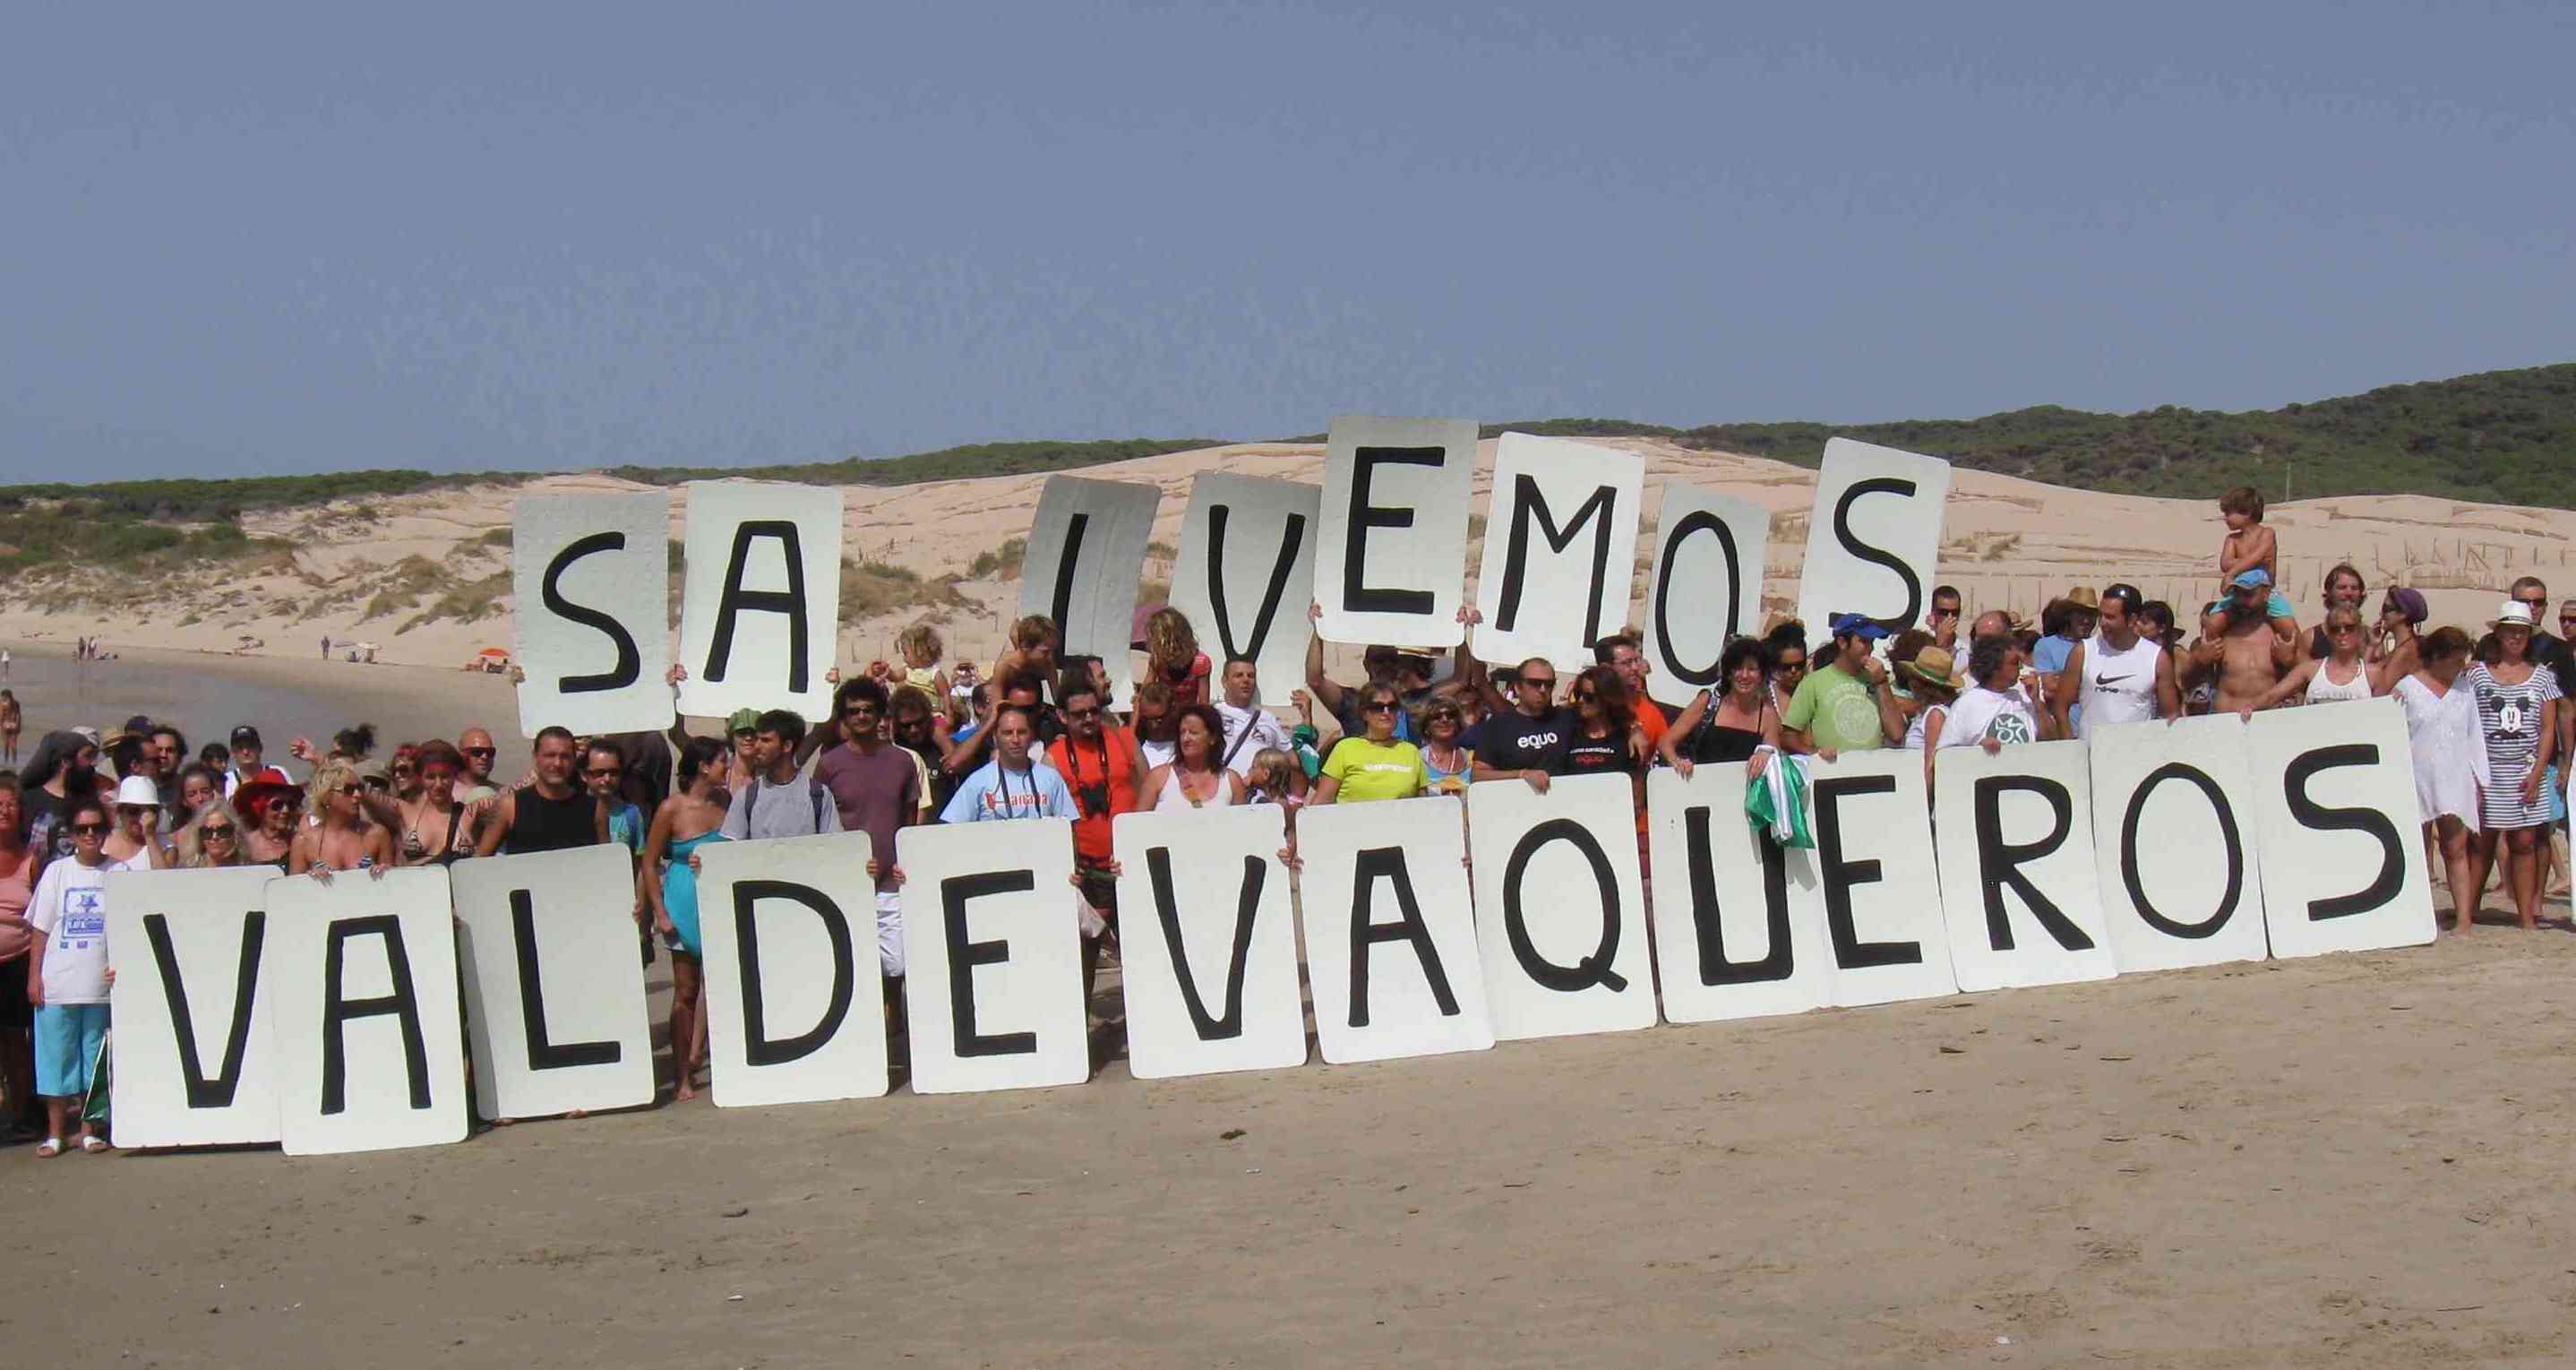 Una manifestación en defensa de Valdevaqueros, una zona que se pretende urbanizar.